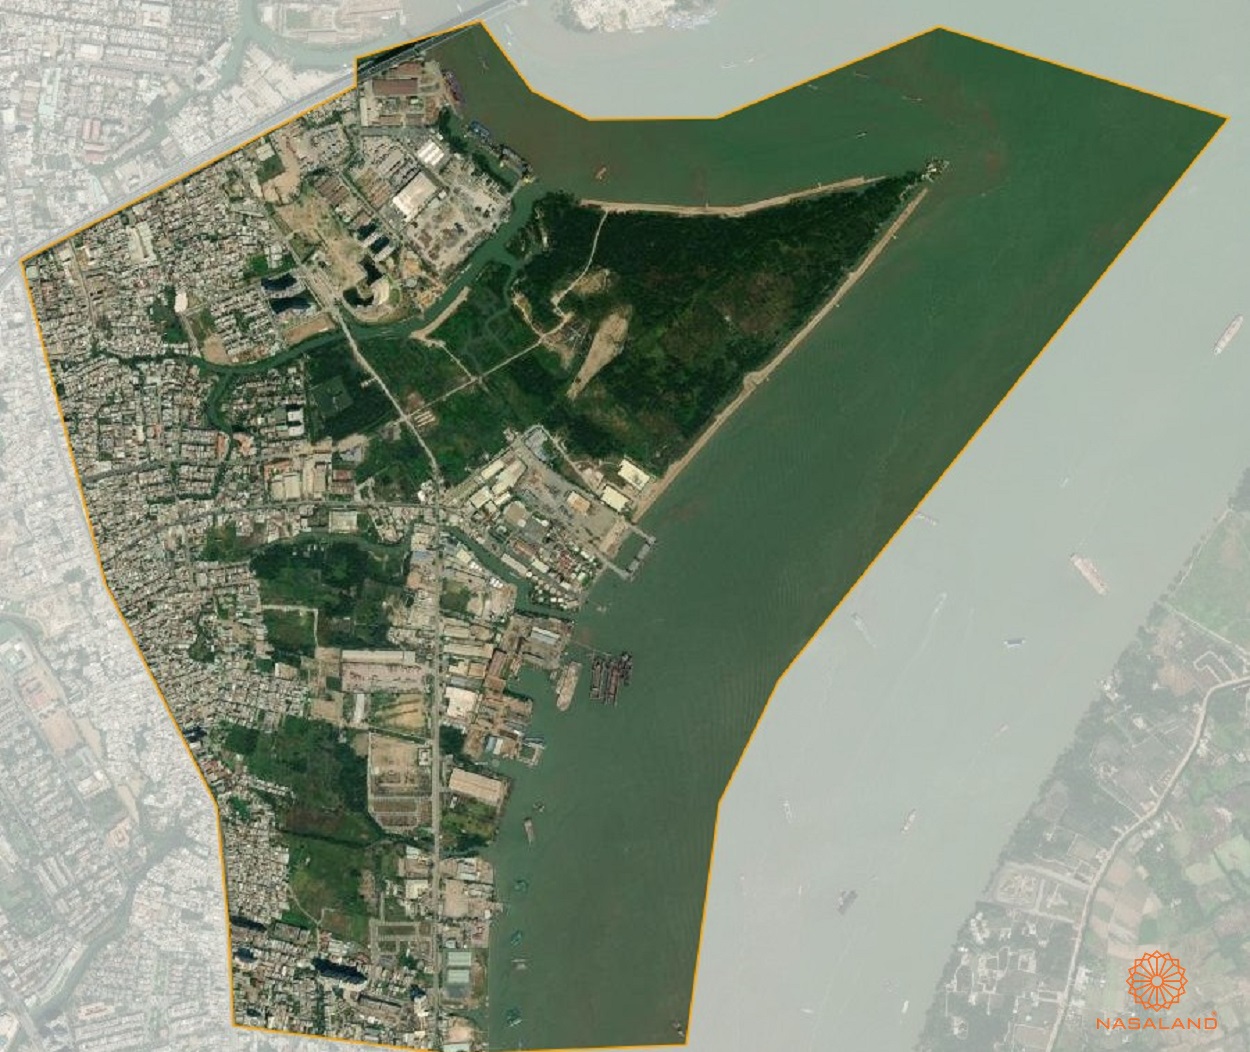 Quy hoạch sử dụng đất Phường Phú Thuận Quận 7 thể hiện trên bản đồ quy hoạch phân khu tỷ lệ 1/2000 của TP. HCM